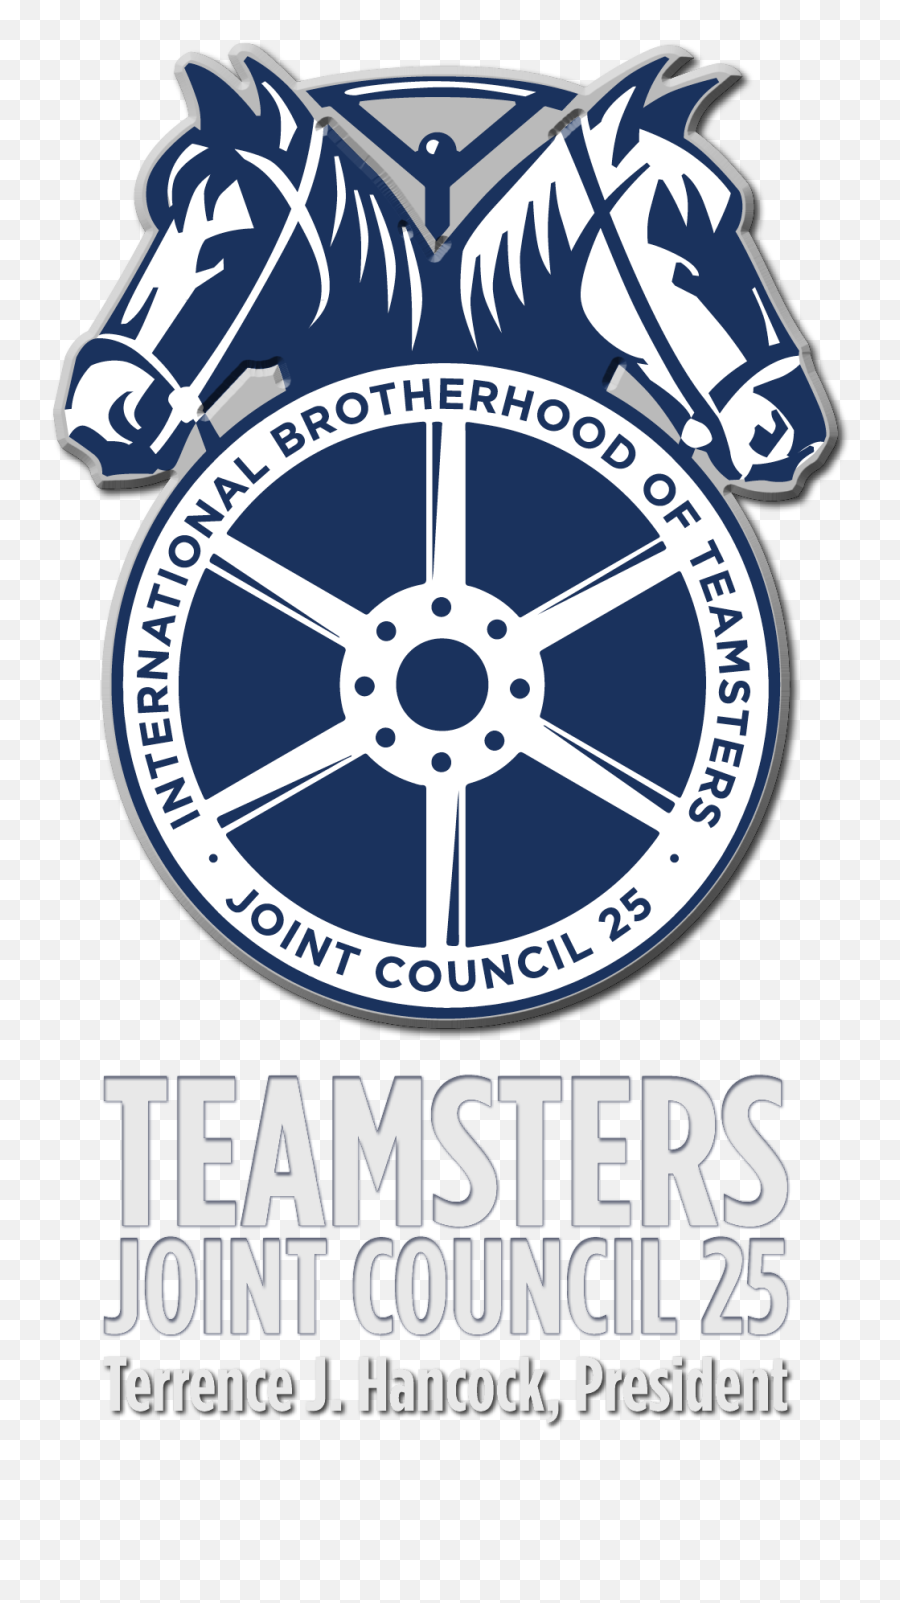 Teamsters Joint Council 25 - International Brotherhood Of Teamsters Emoji,Teamsters Logo